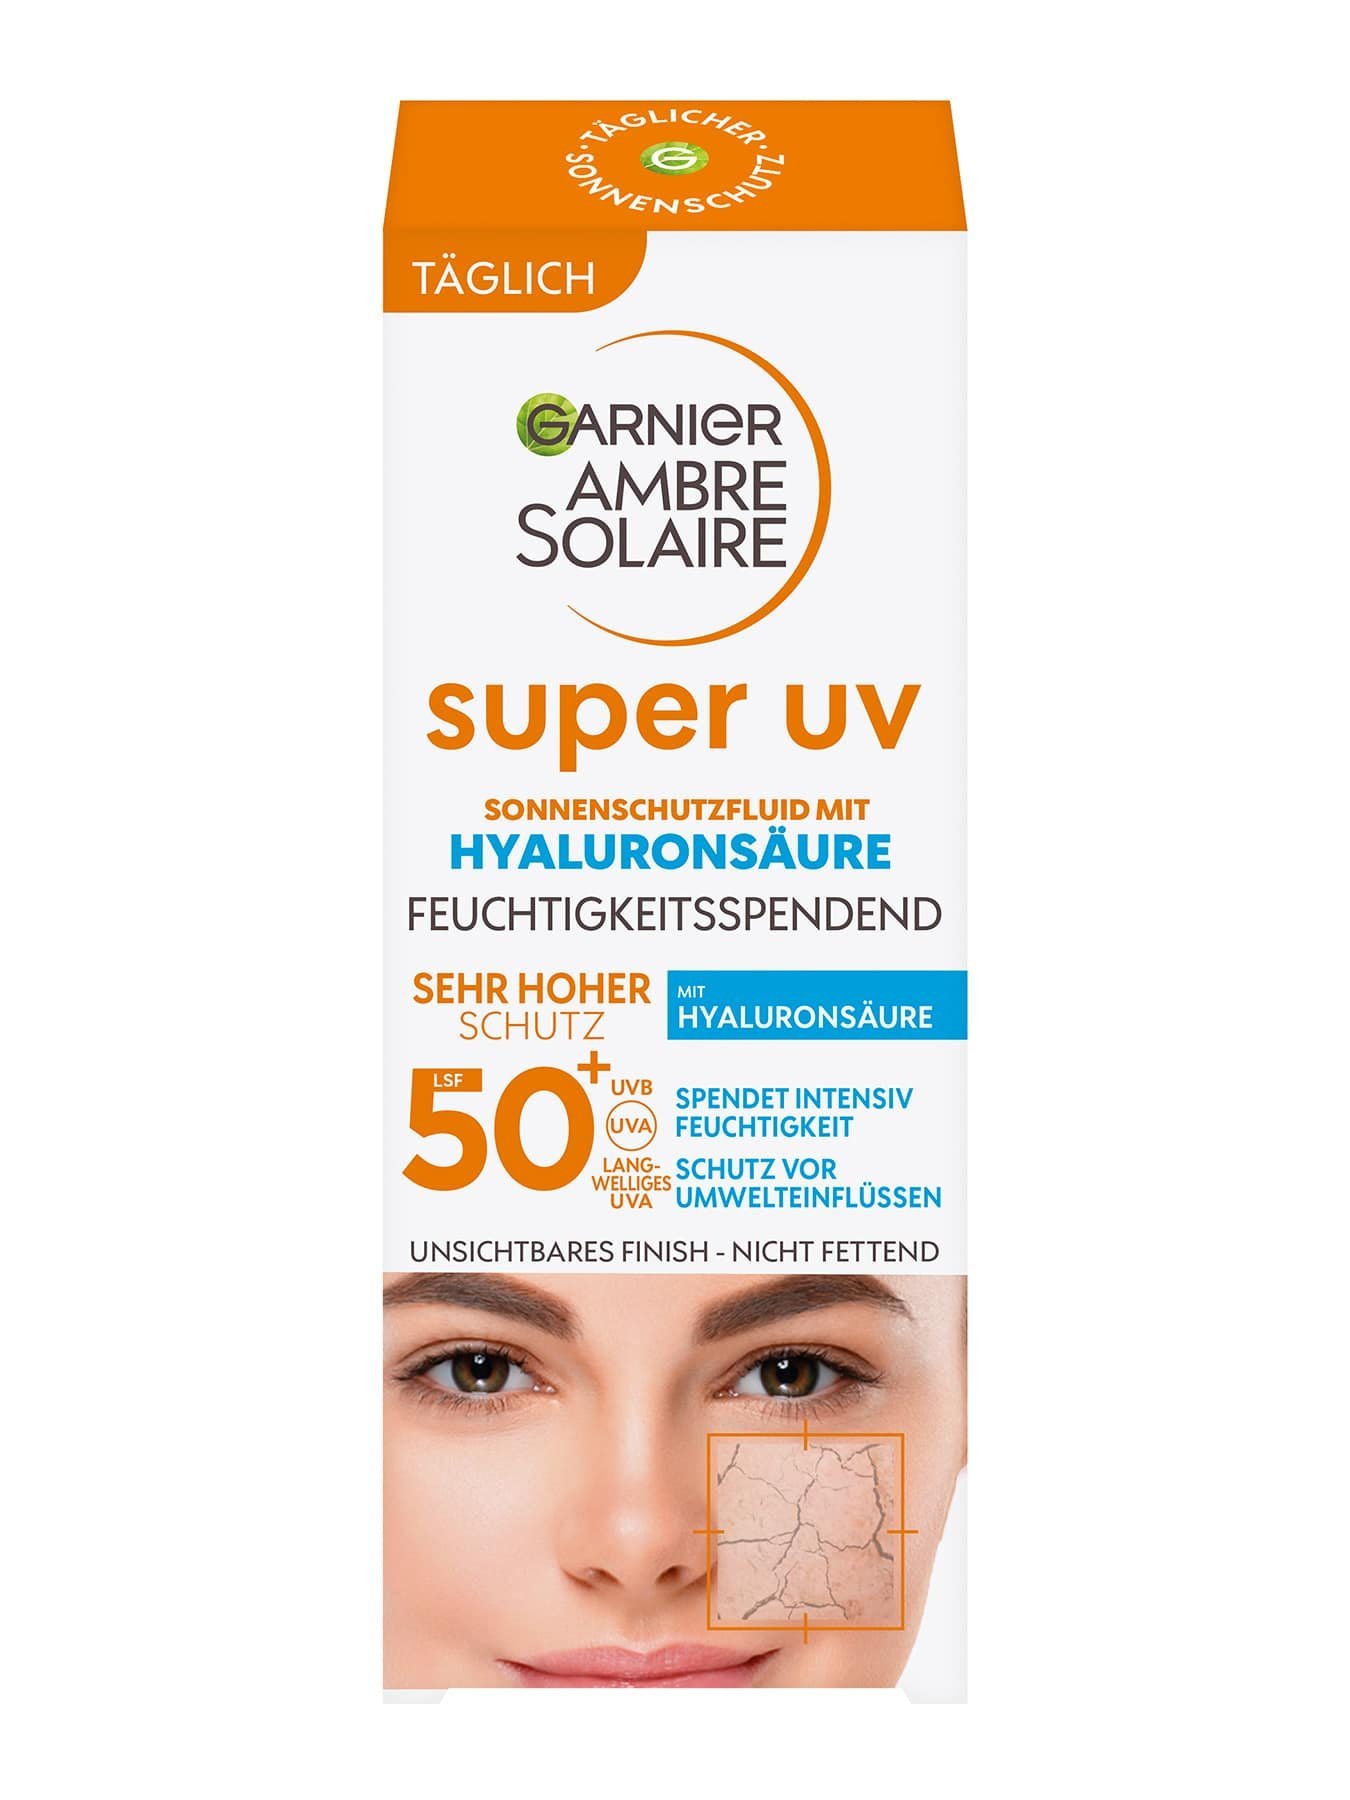 Super UV Sonnenschutz-Fluid LSF 50+ mit Hyaluronsäure - Verpackung Vorderseite